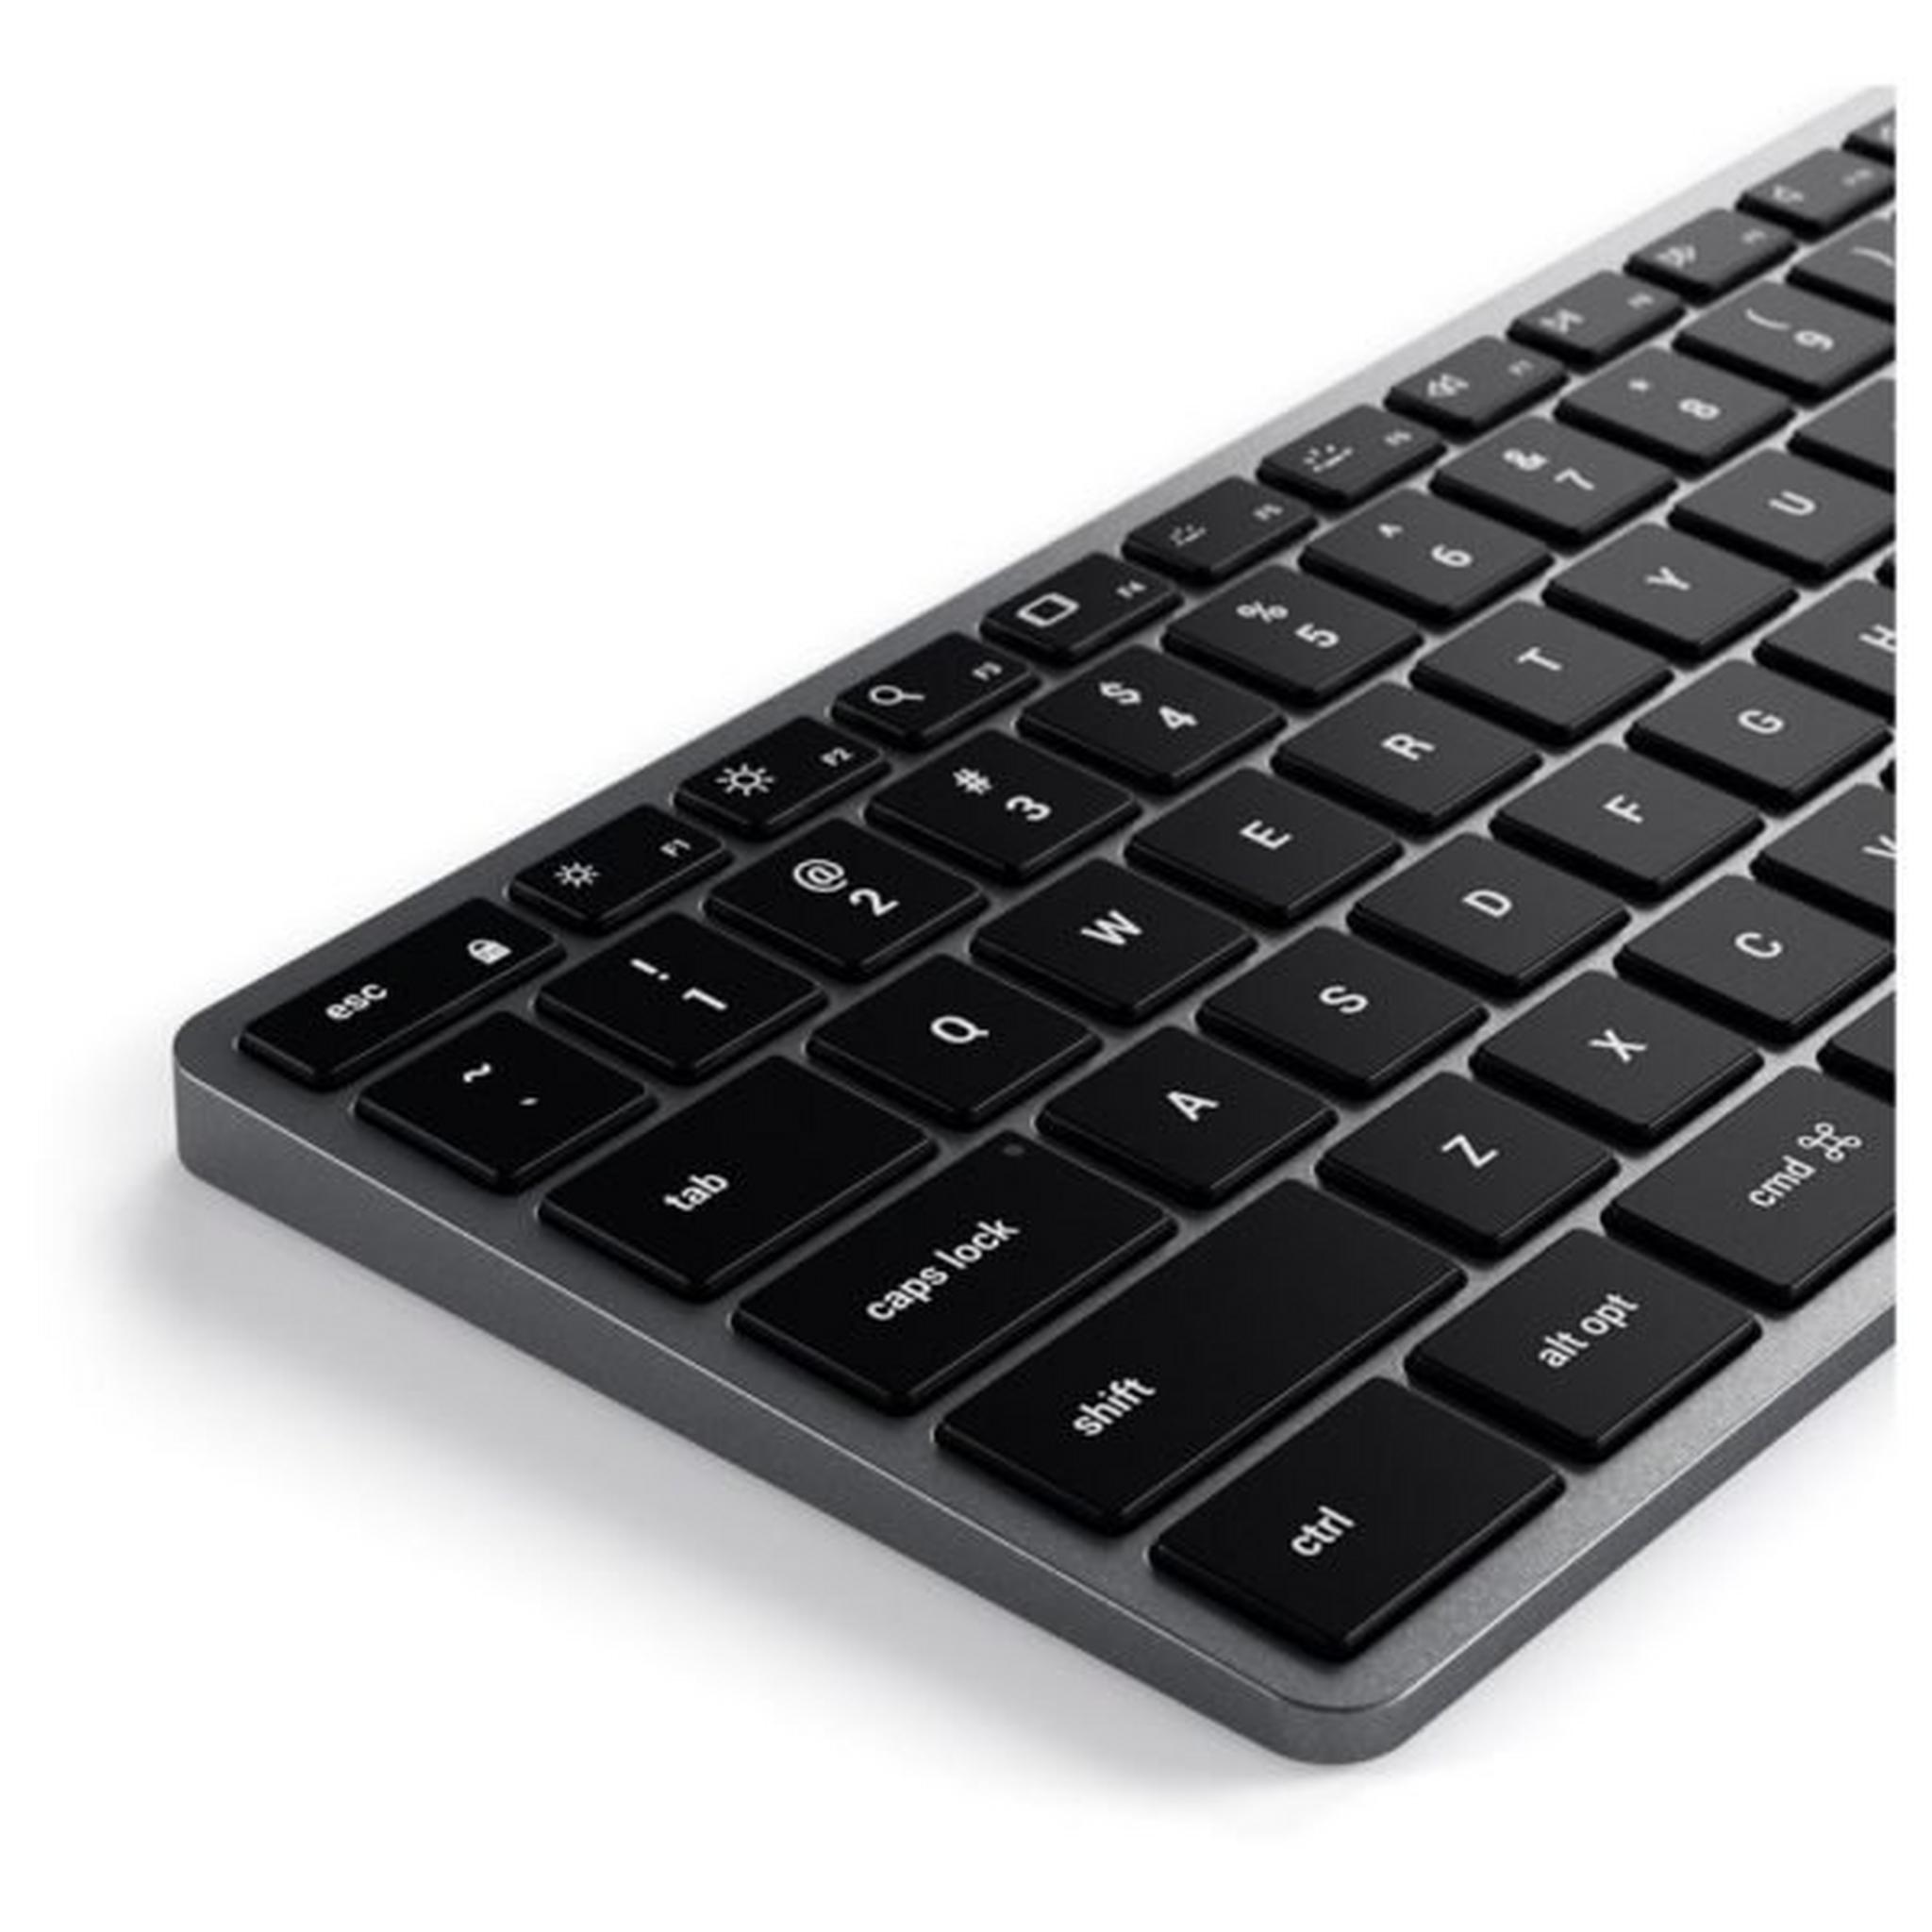 لوحة مفاتيح ساتشي الترا سليم X3 بتقنية البلوتوث بإضاءة خلفية - رمادي فلكي